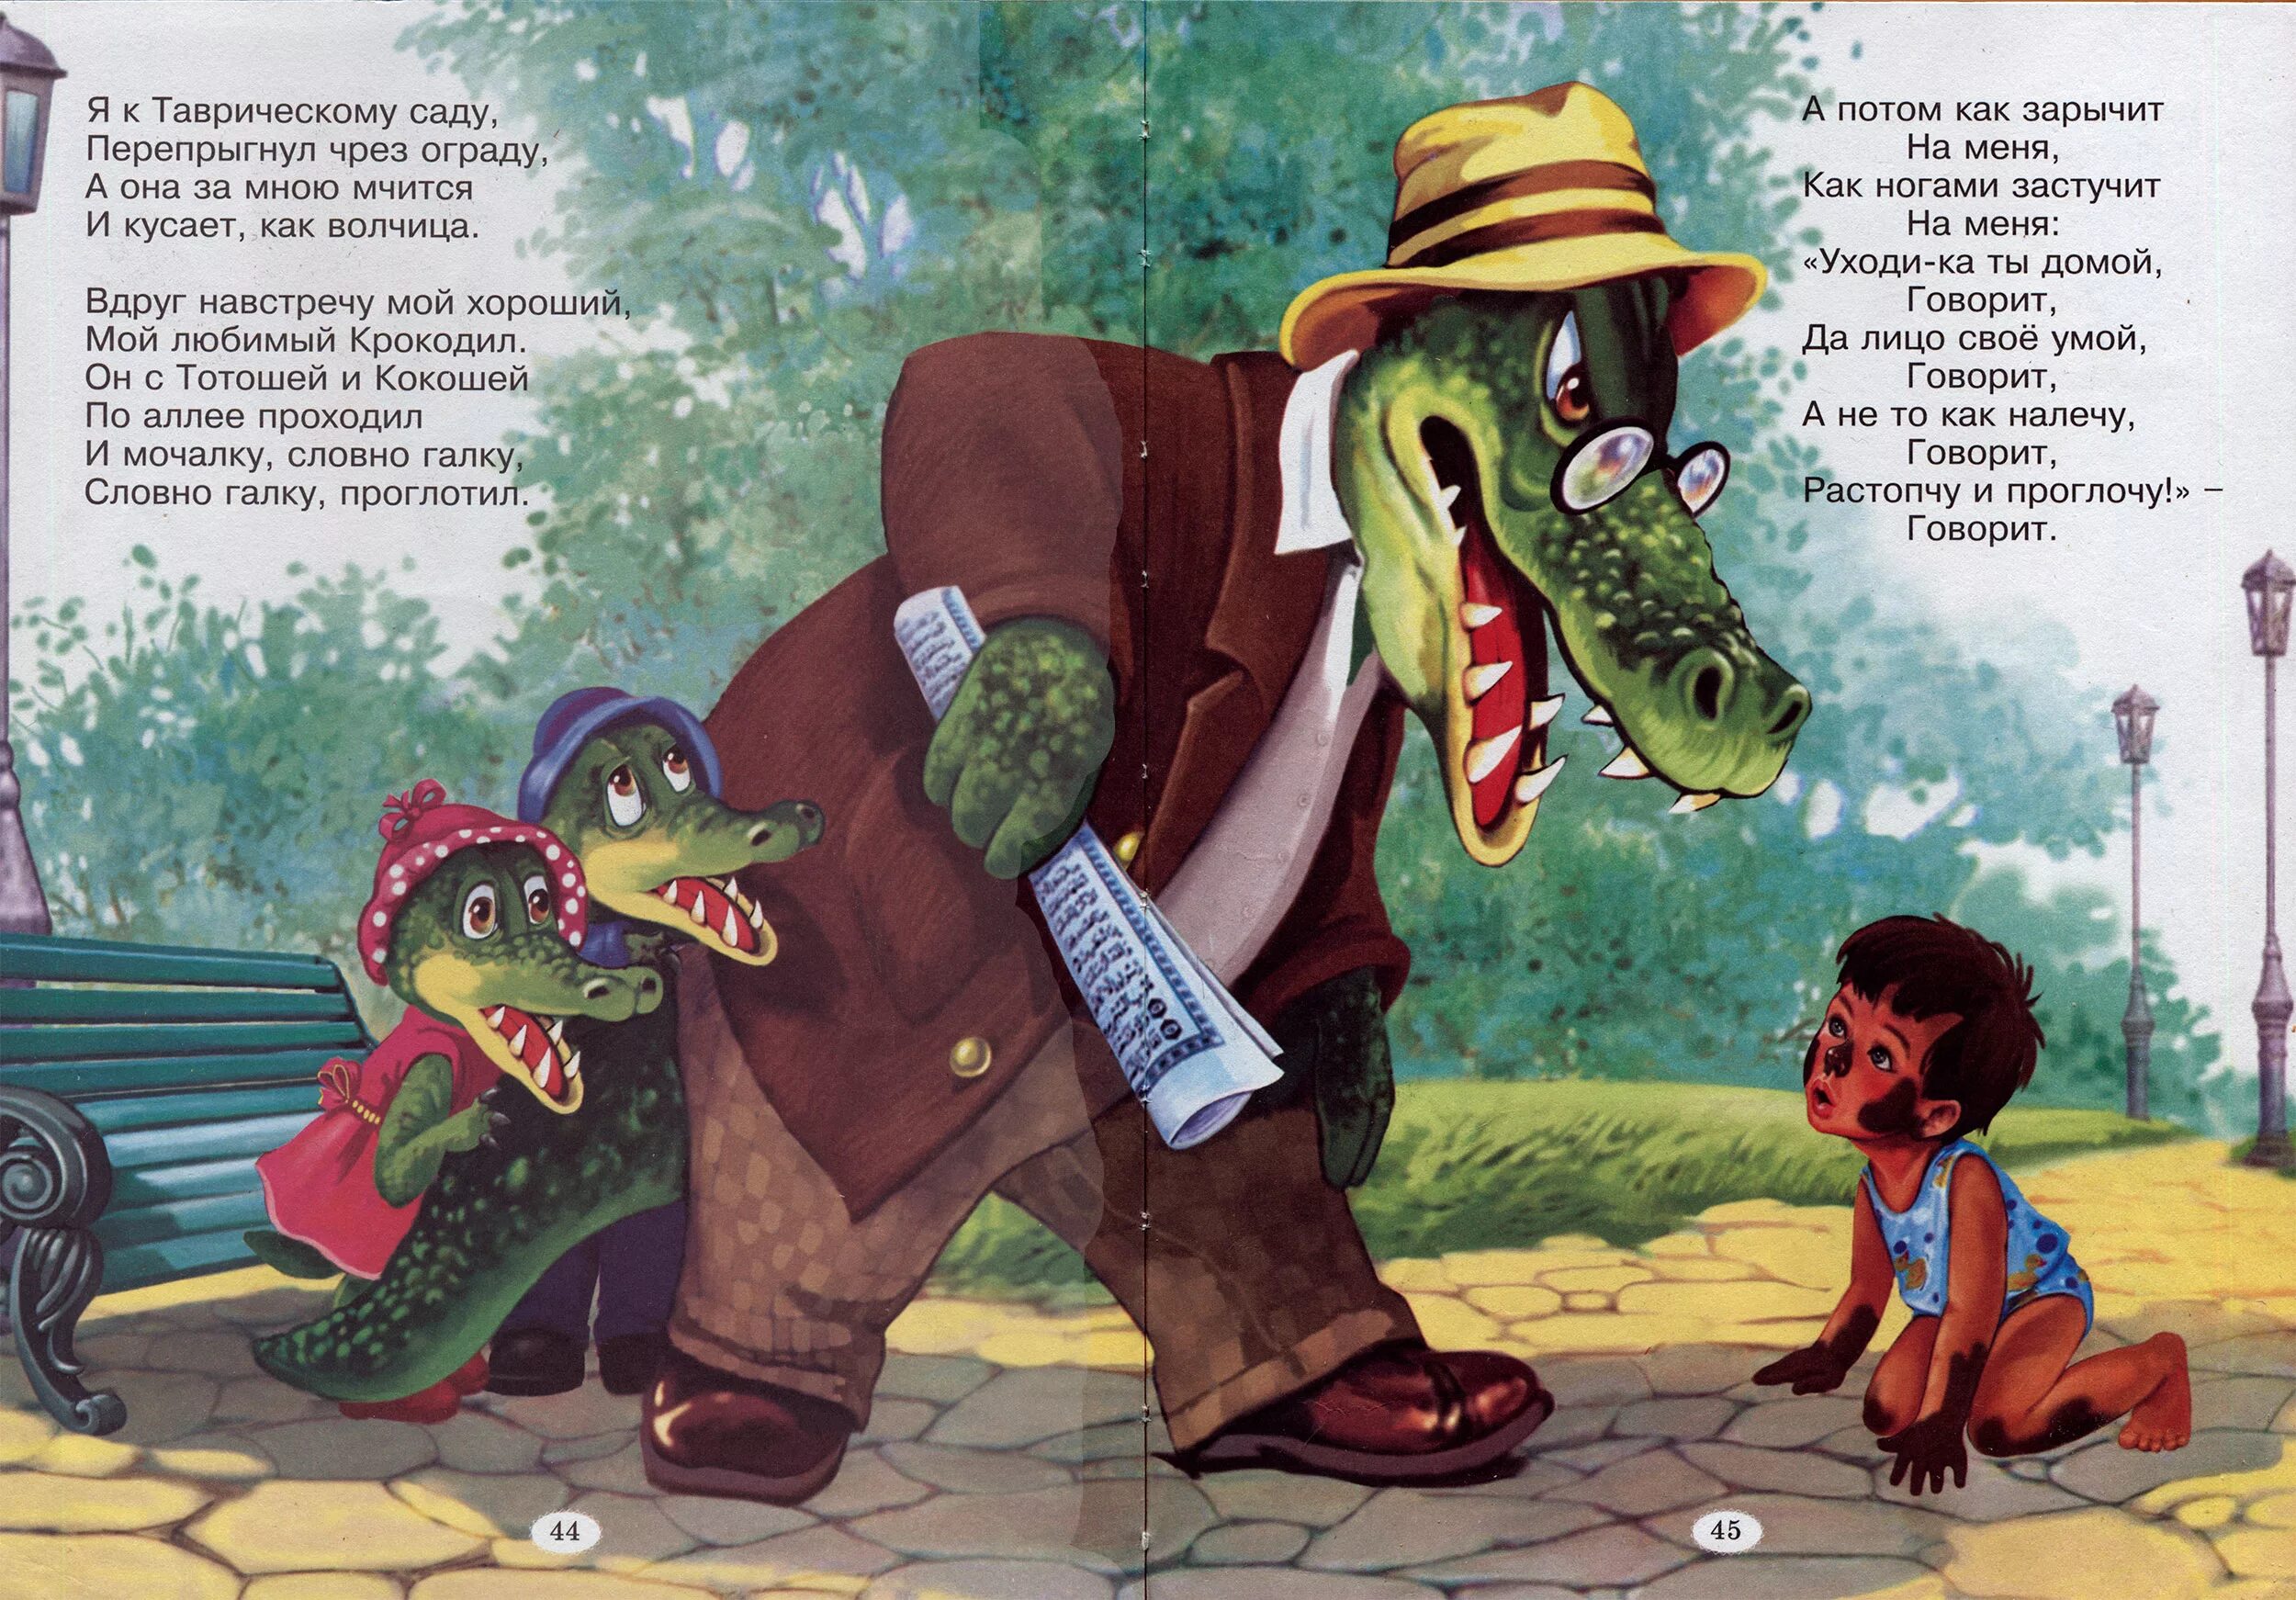 Четыре пьяных ежика и крокодил. Чуковский крокодил с Тотошей и Кокошей. Иллюстрации крокодил Чуковского для детей. Чуковский Мойдодыр крокодил.